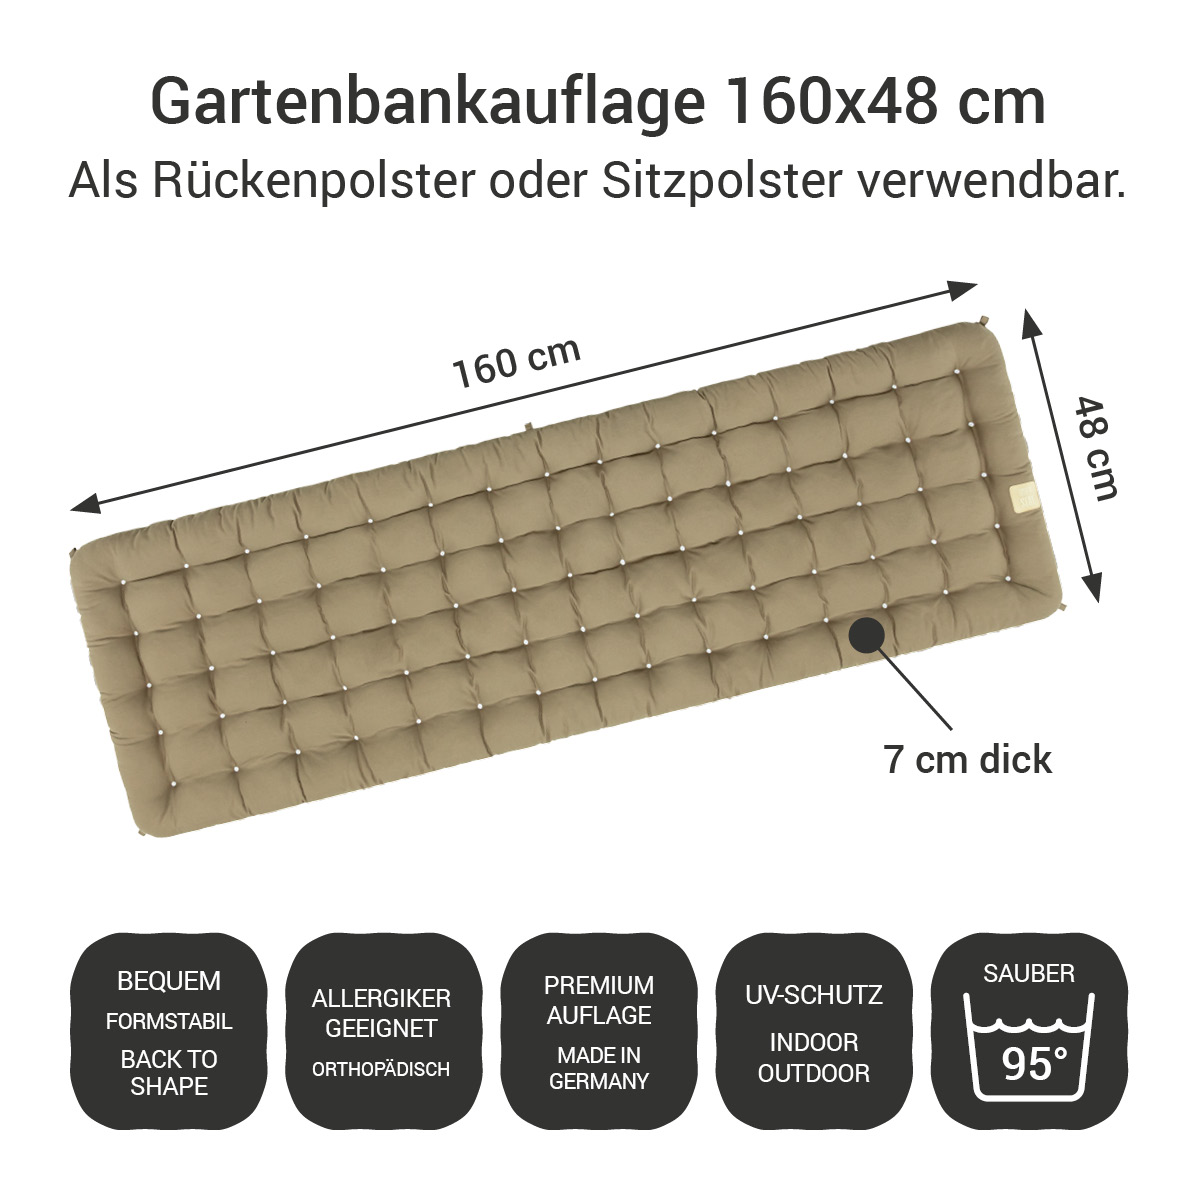 Gartenbank Auflage goldbraun 160x48 cm / 160 x 50 cm | bequem & orthopädisch, komplett im Ganzen waschbar bis 95°C, wetterfest, Made in Germany